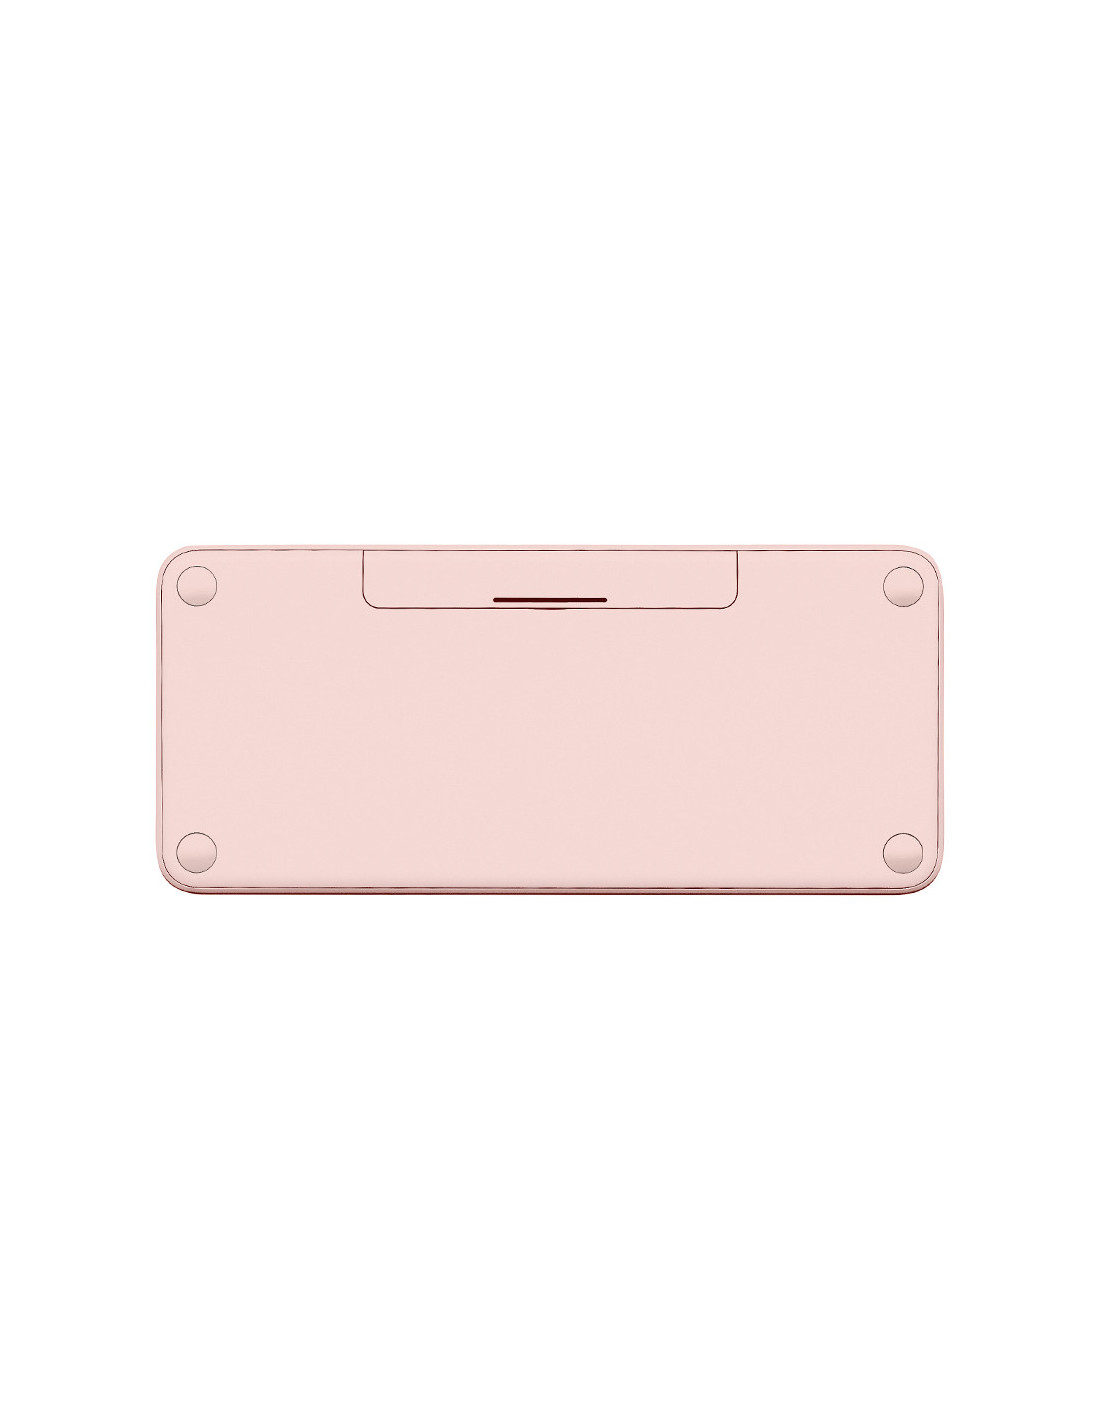 Logitech Wireless Keyboard K380 - Pink (Anglais)